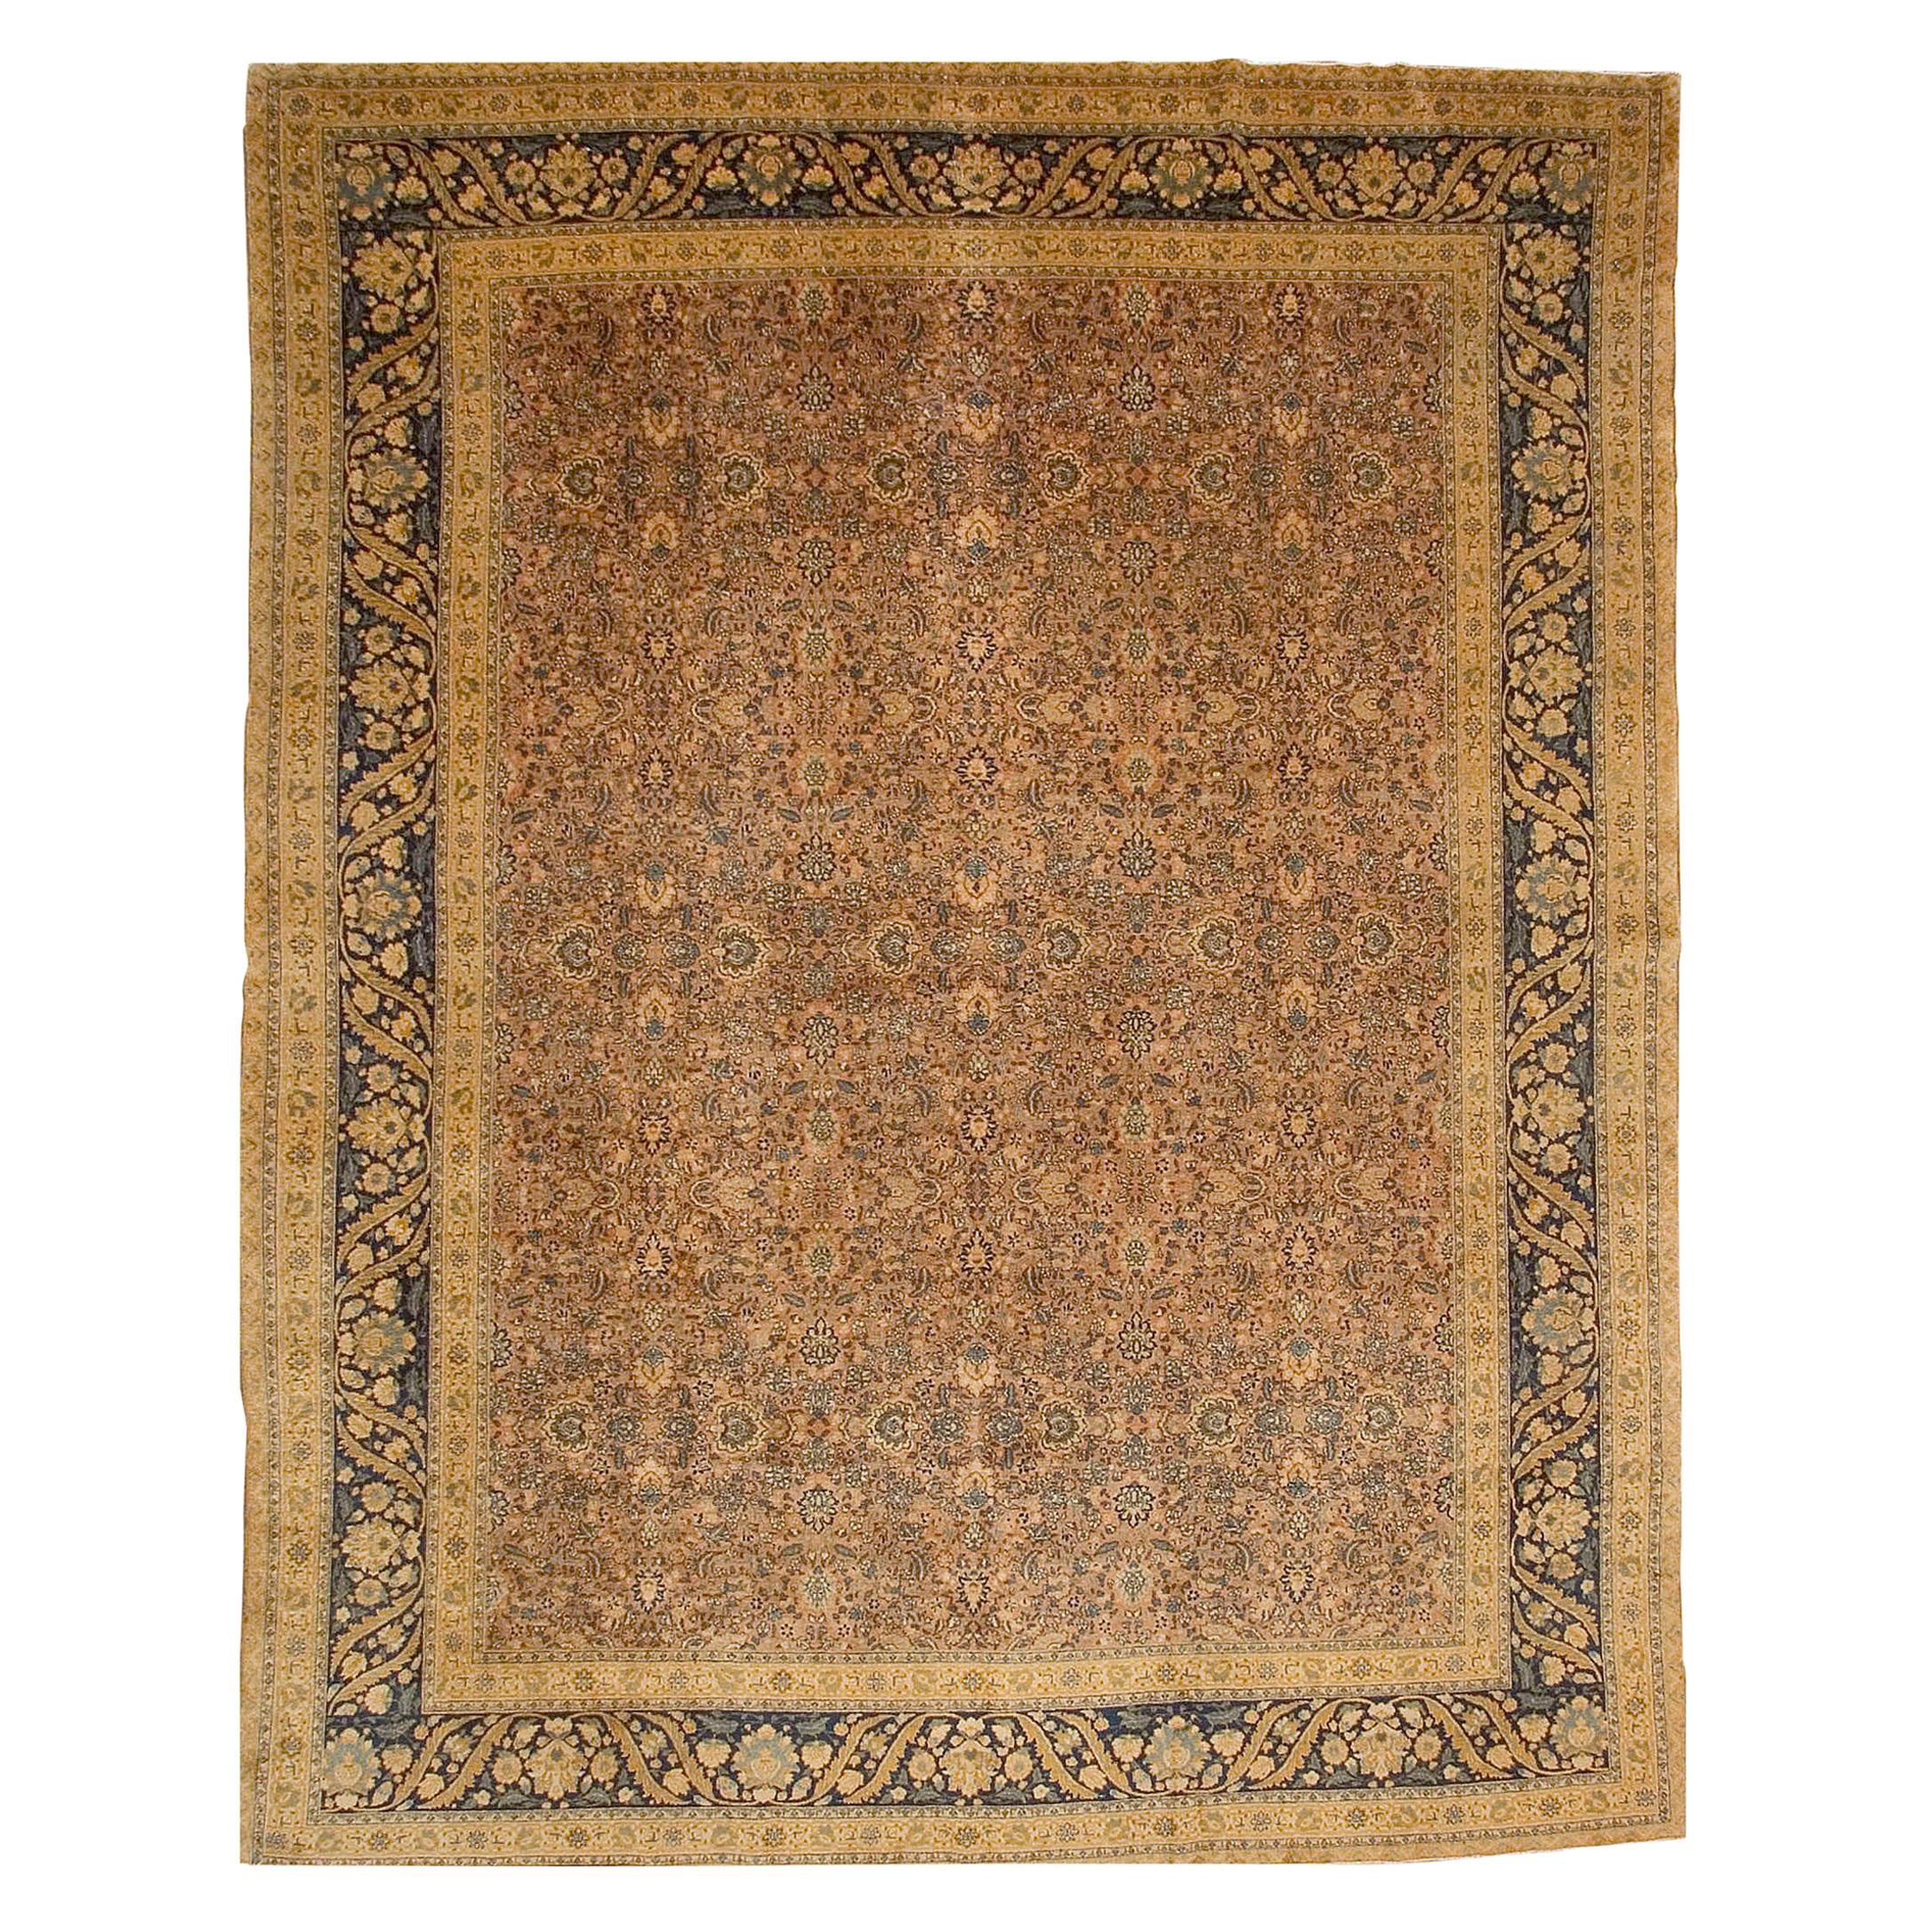 Tapis persan ancien de Tabriz, datant d'environ 1900  10'10 x 13'9 cm